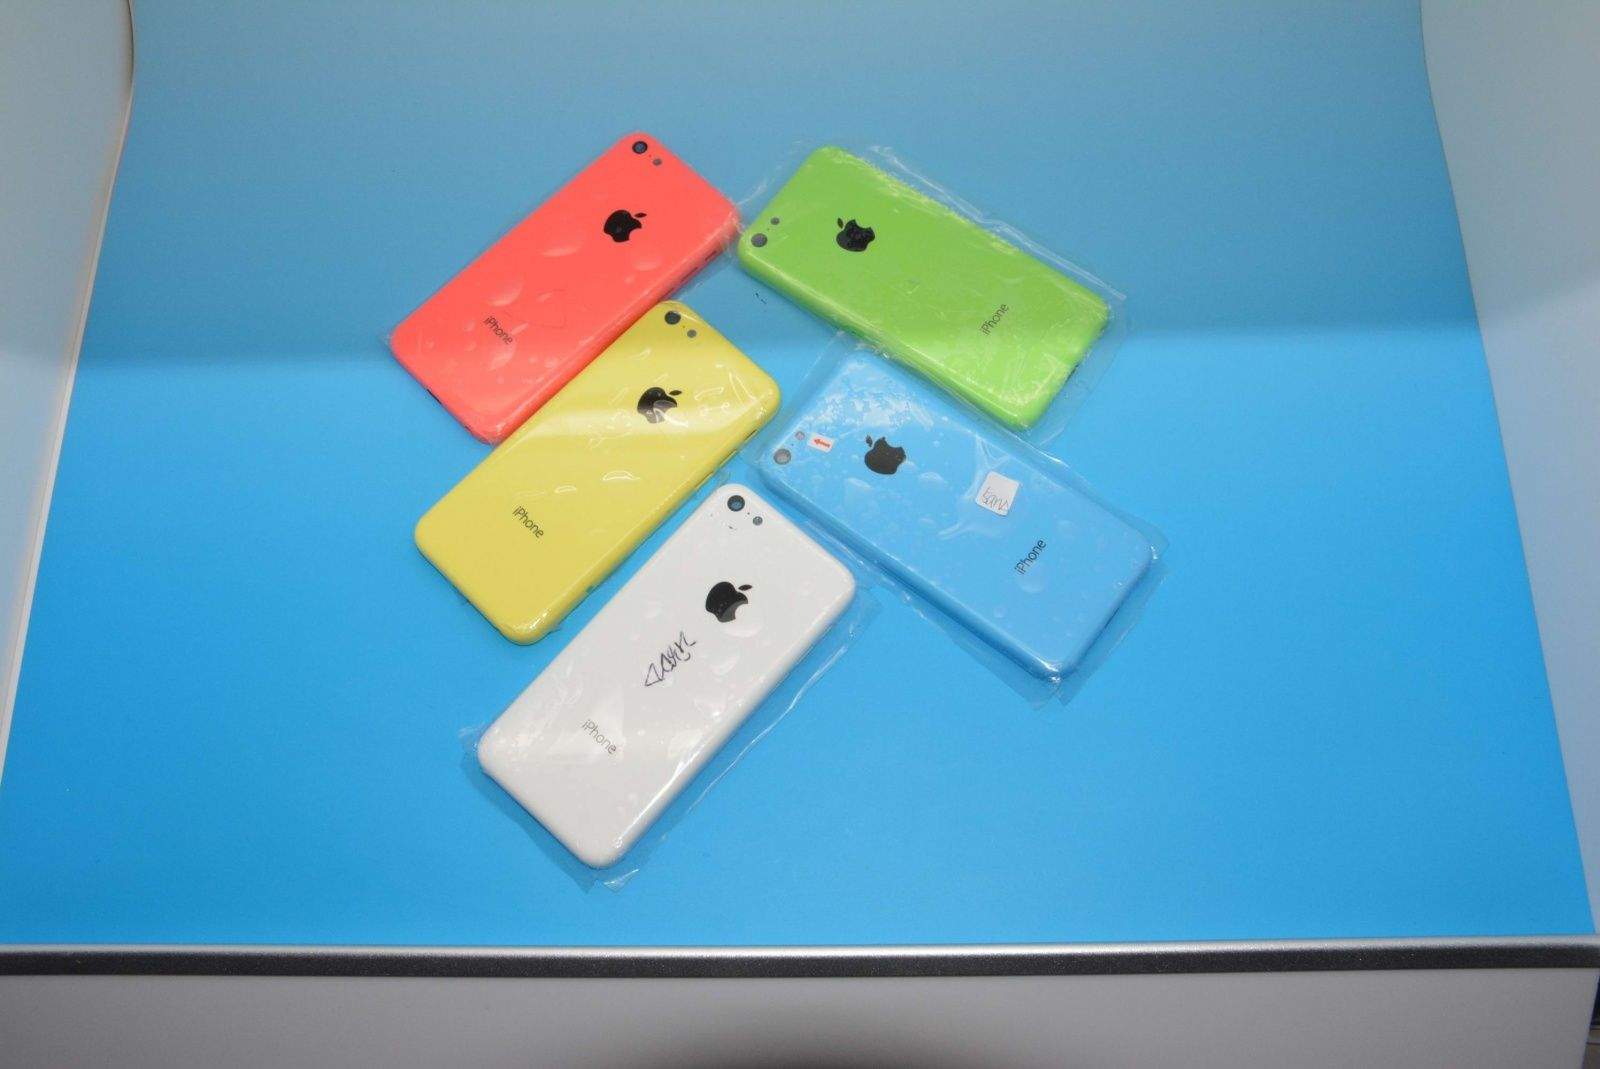 iphone-5c-cases